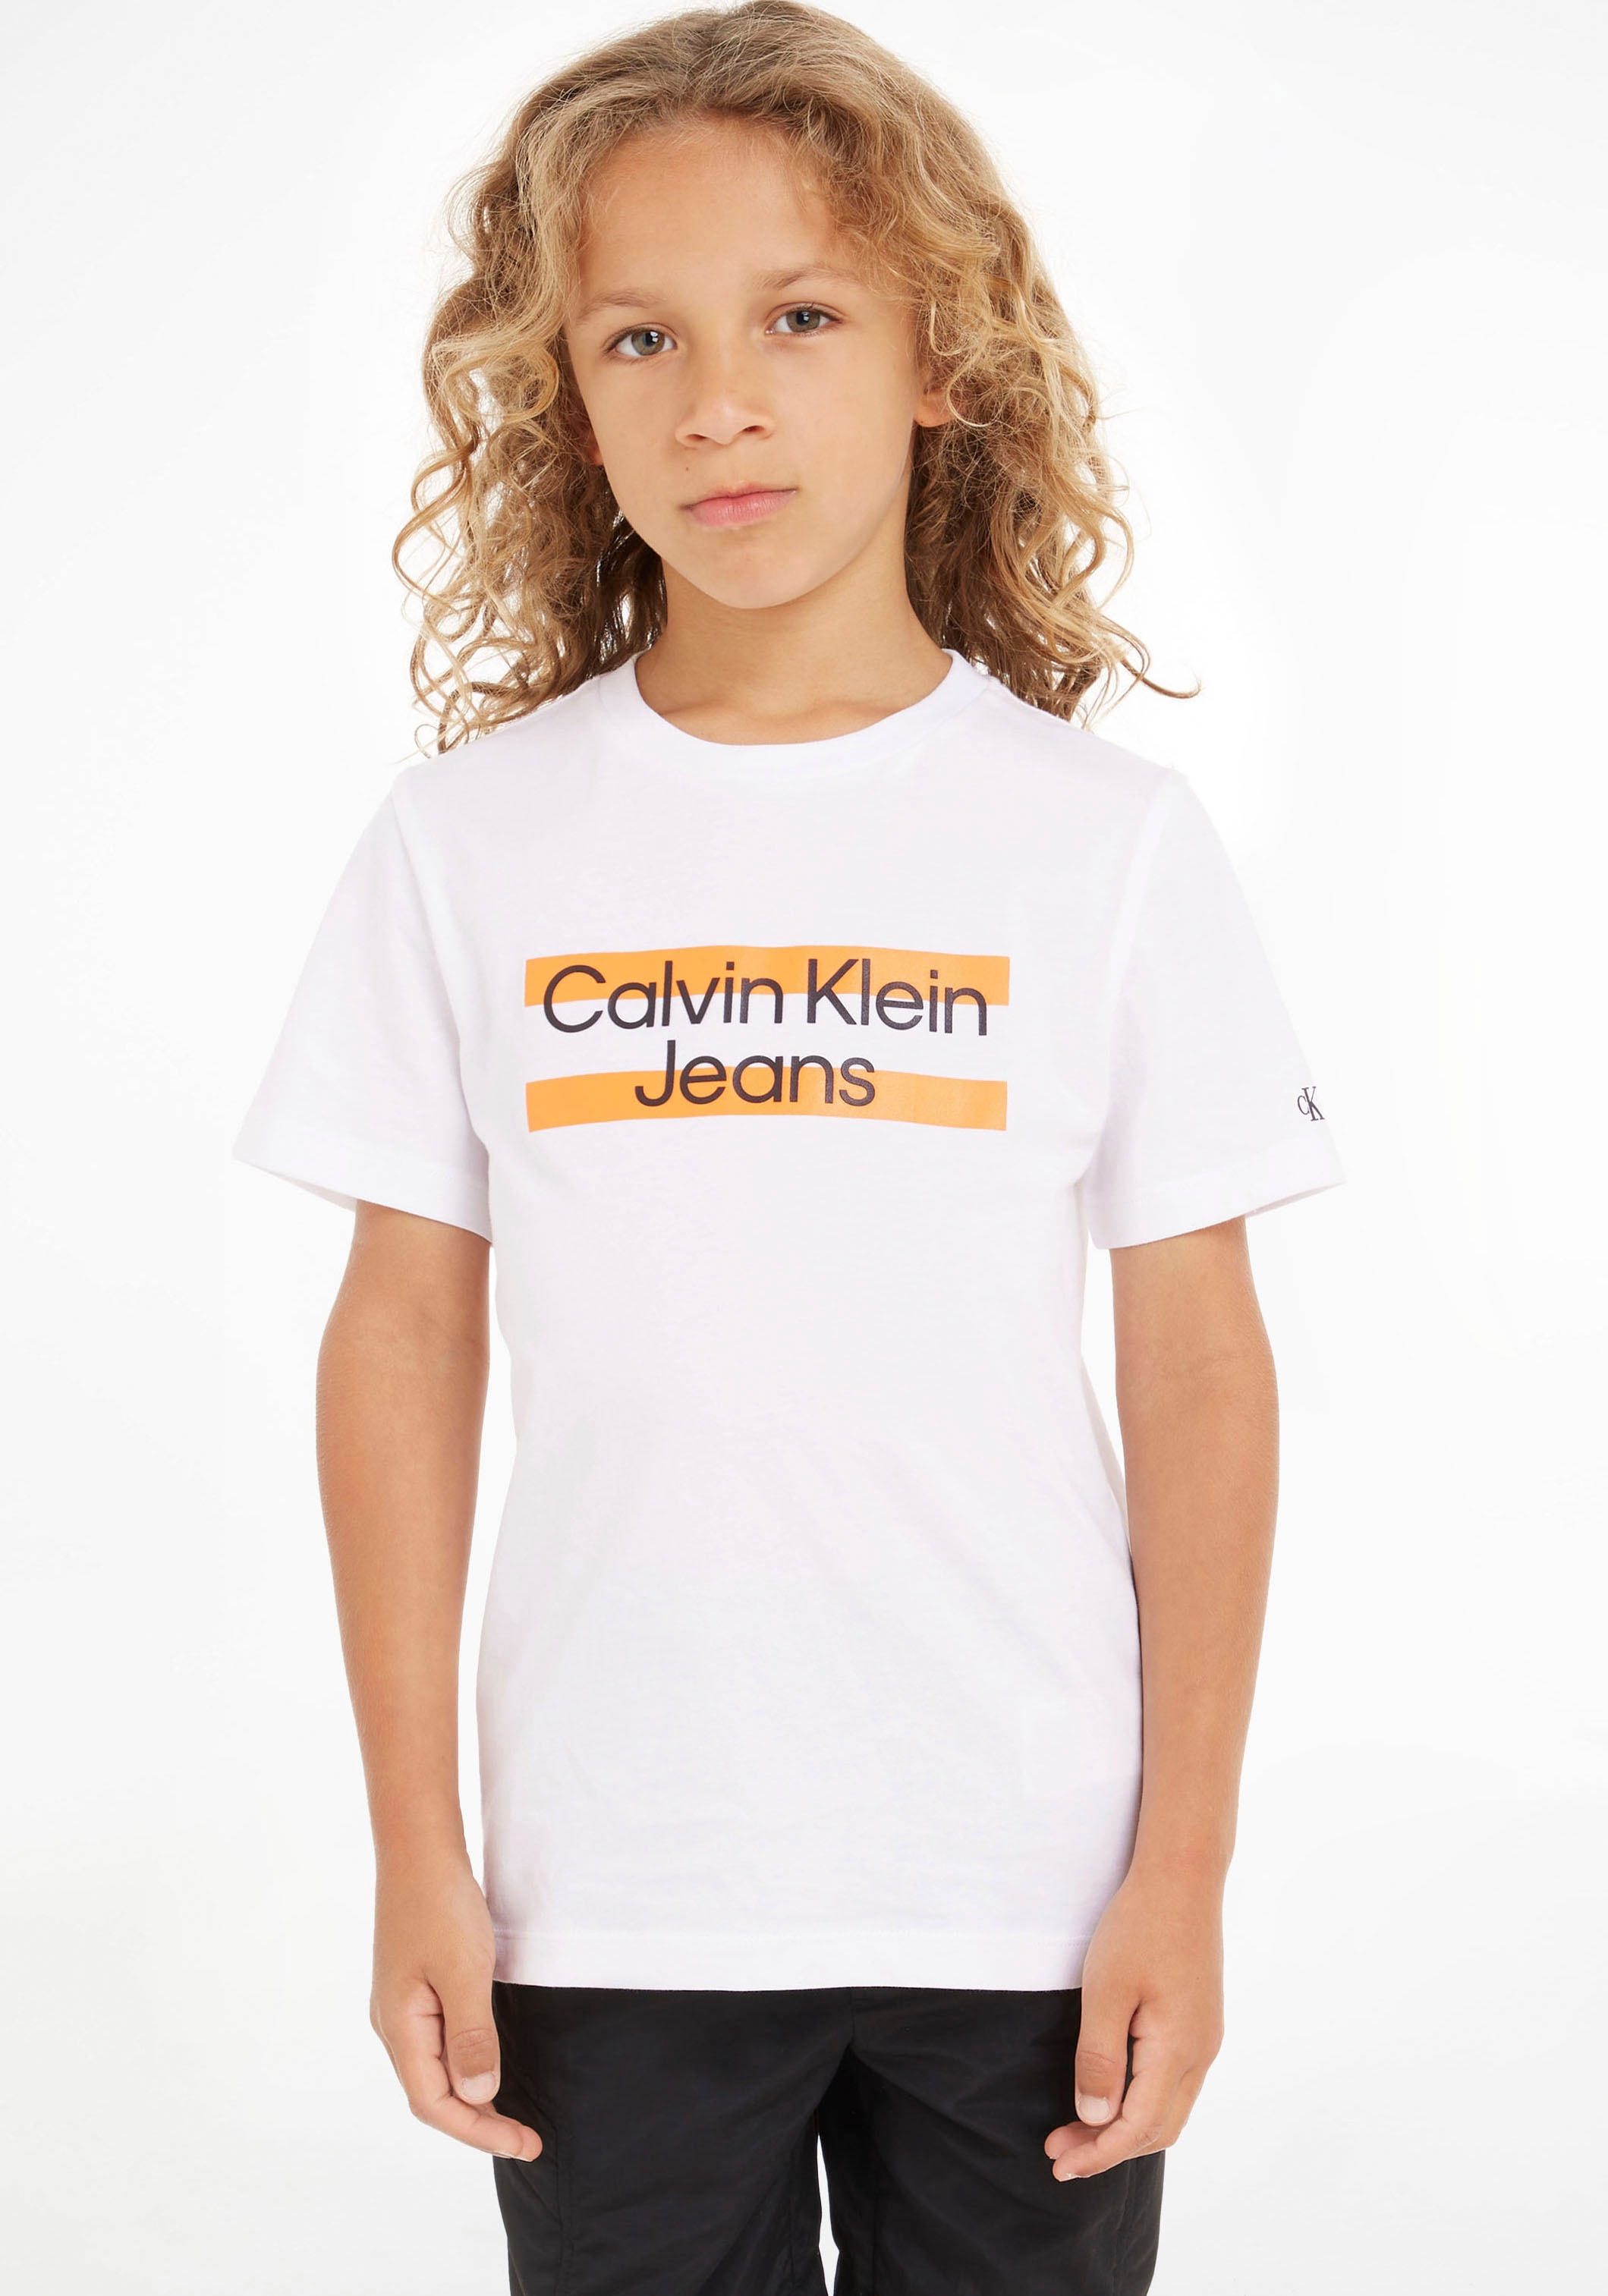 Brust OTTO Klein Klein T-Shirt, Jeans Calvin Logodruck bei Calvin der mit auf